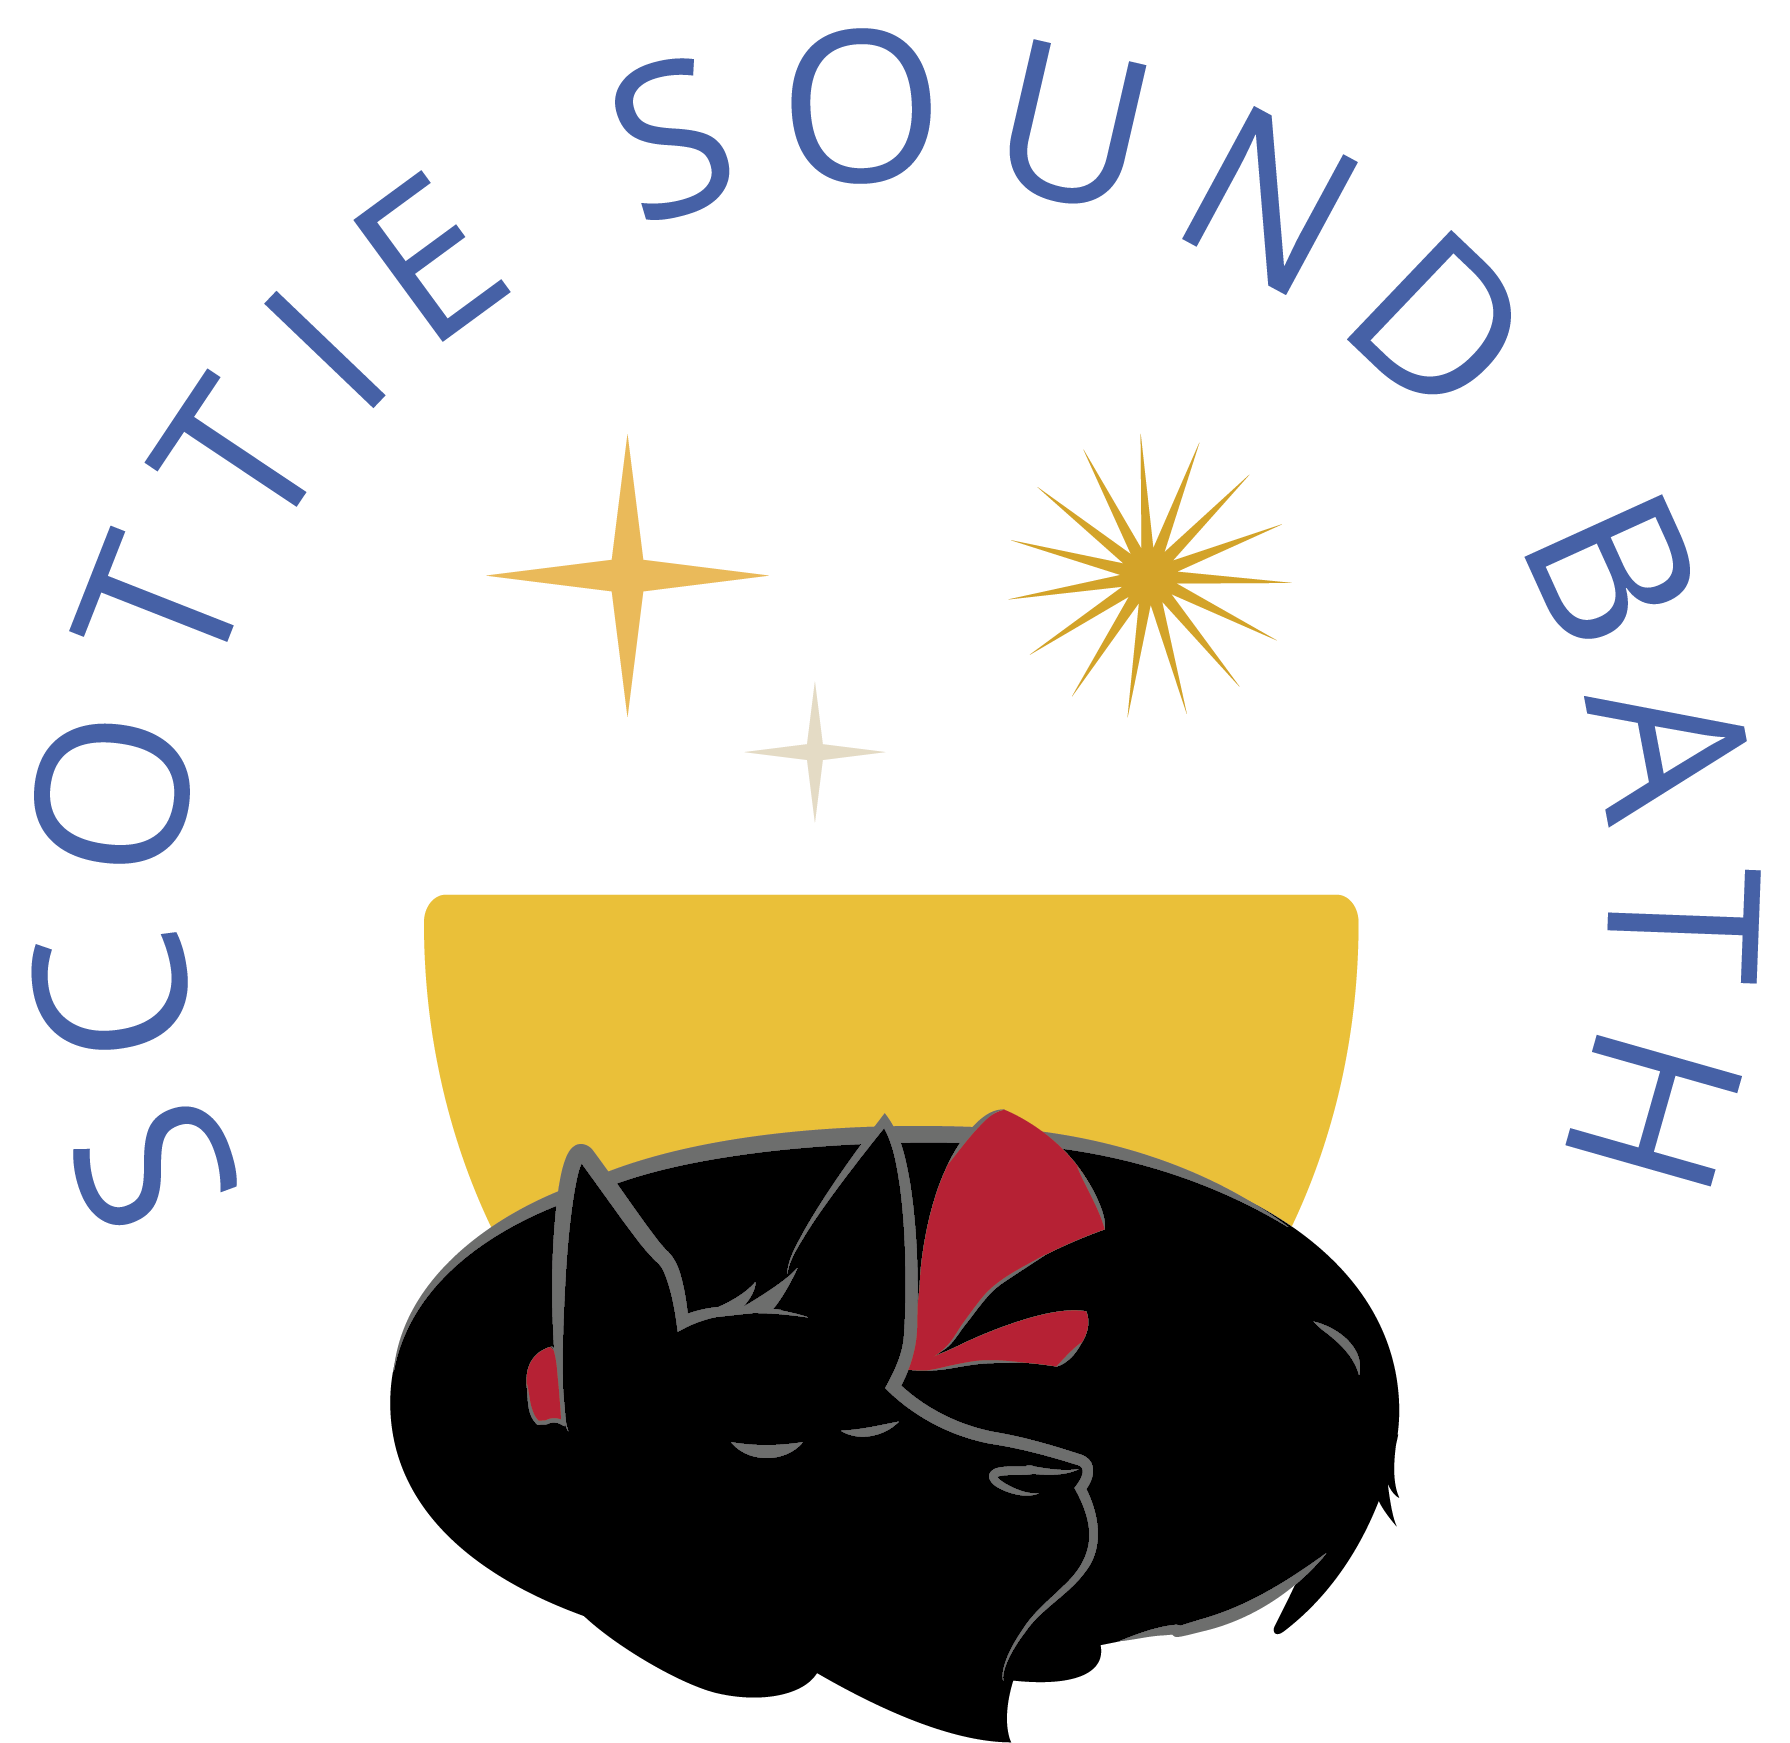 Scottie Sound Bath